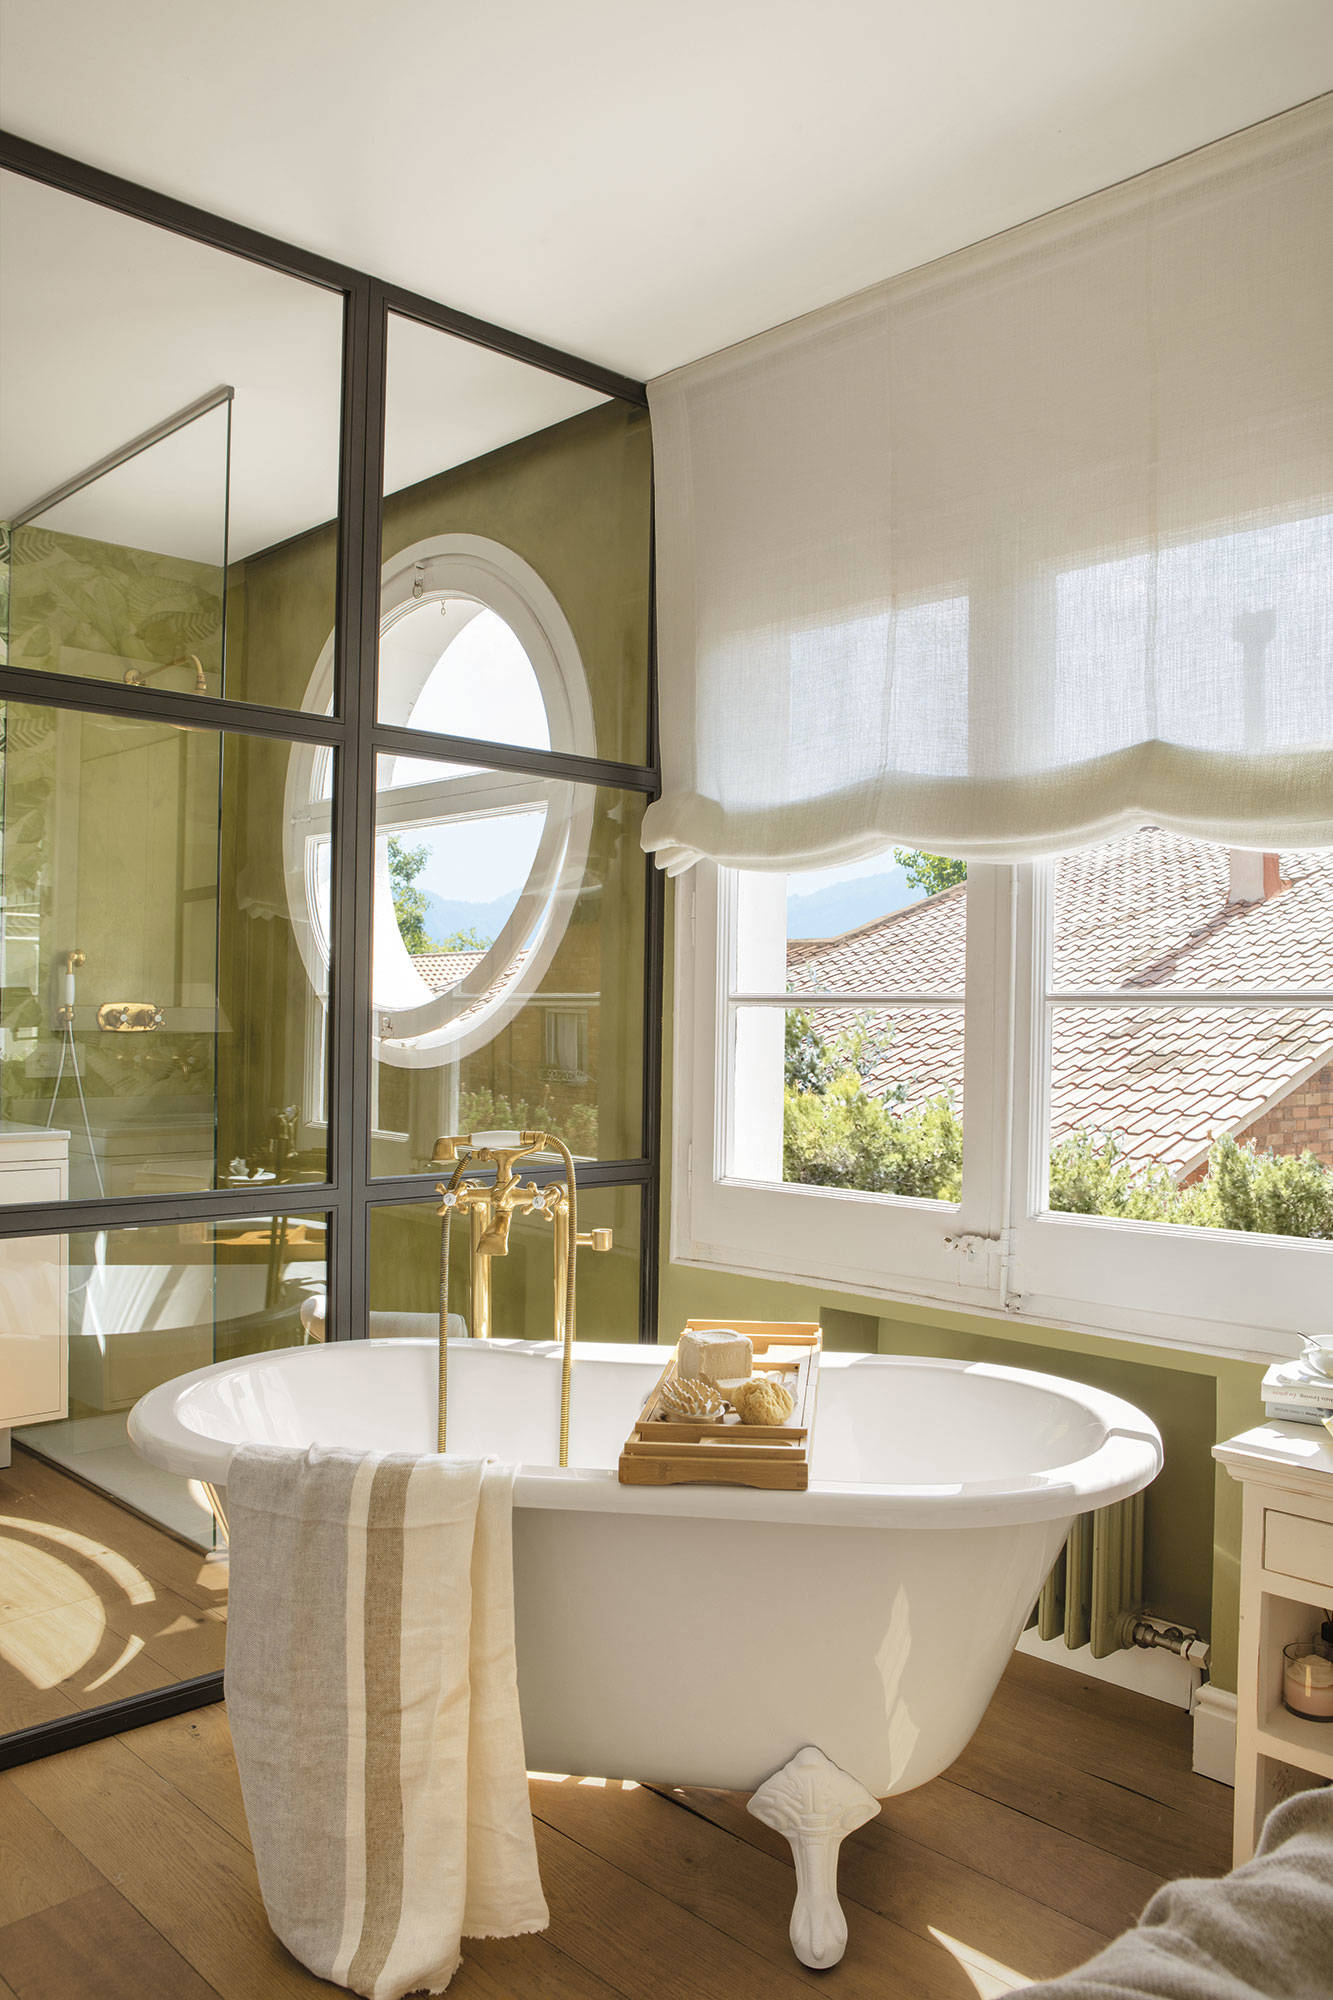 Baño con paredes verdes, ventana redonda, pared de cristal y bañera exenta.